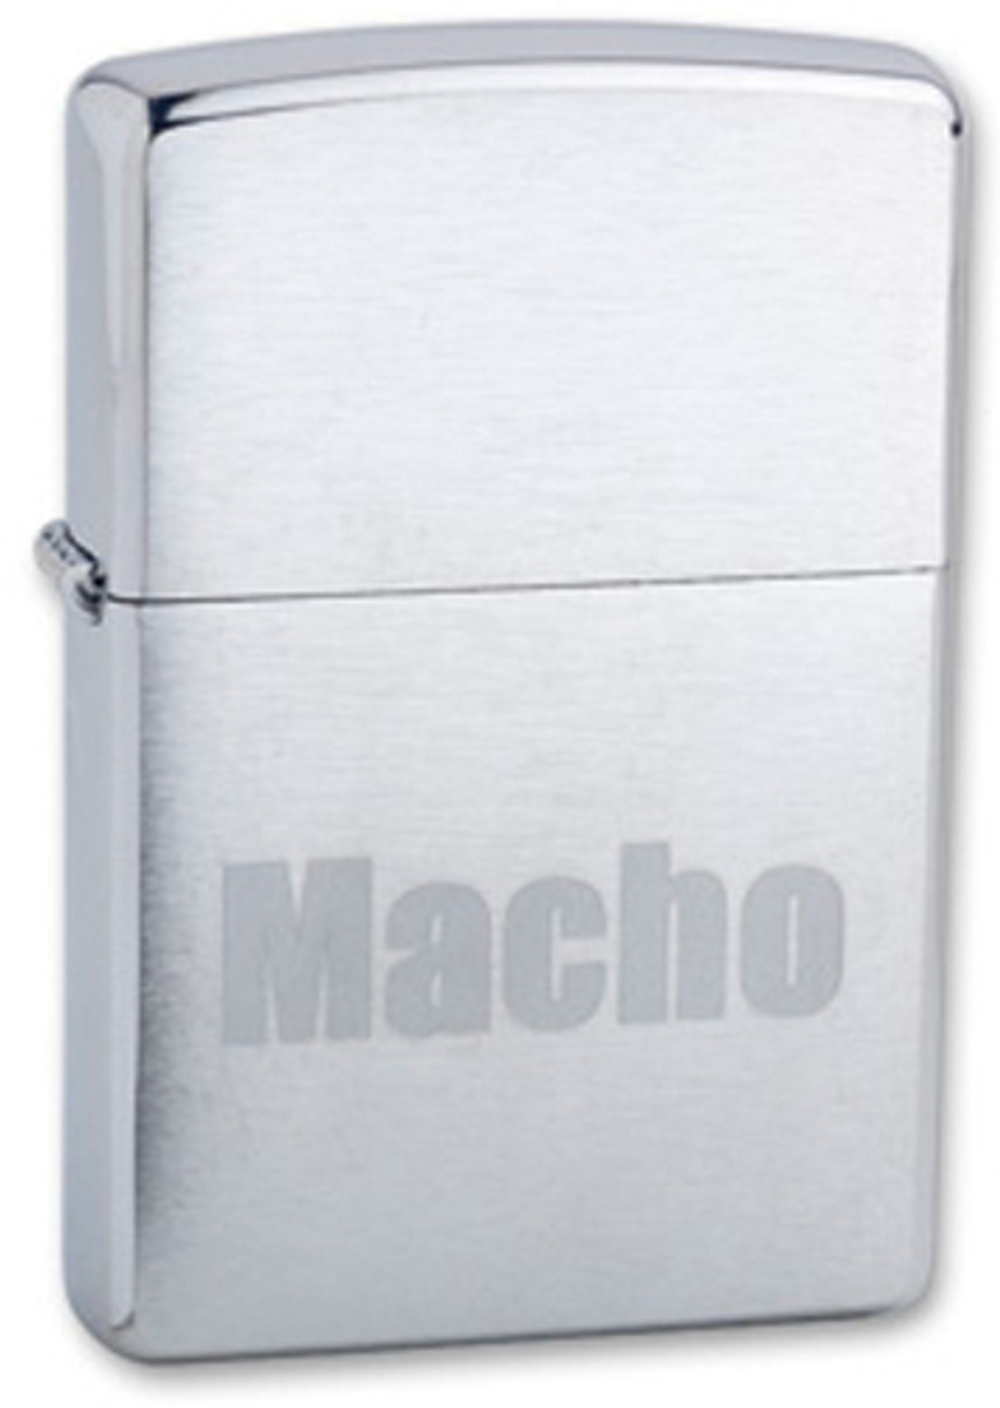 Легендарная классическая американская бензиновая широкая зажигалка ZIPPO Classic  Brushed Chrome™ серебристая матовая из латуни и стали с надписью "Мачо" на фронтальной поверхности ZP-200 Macho